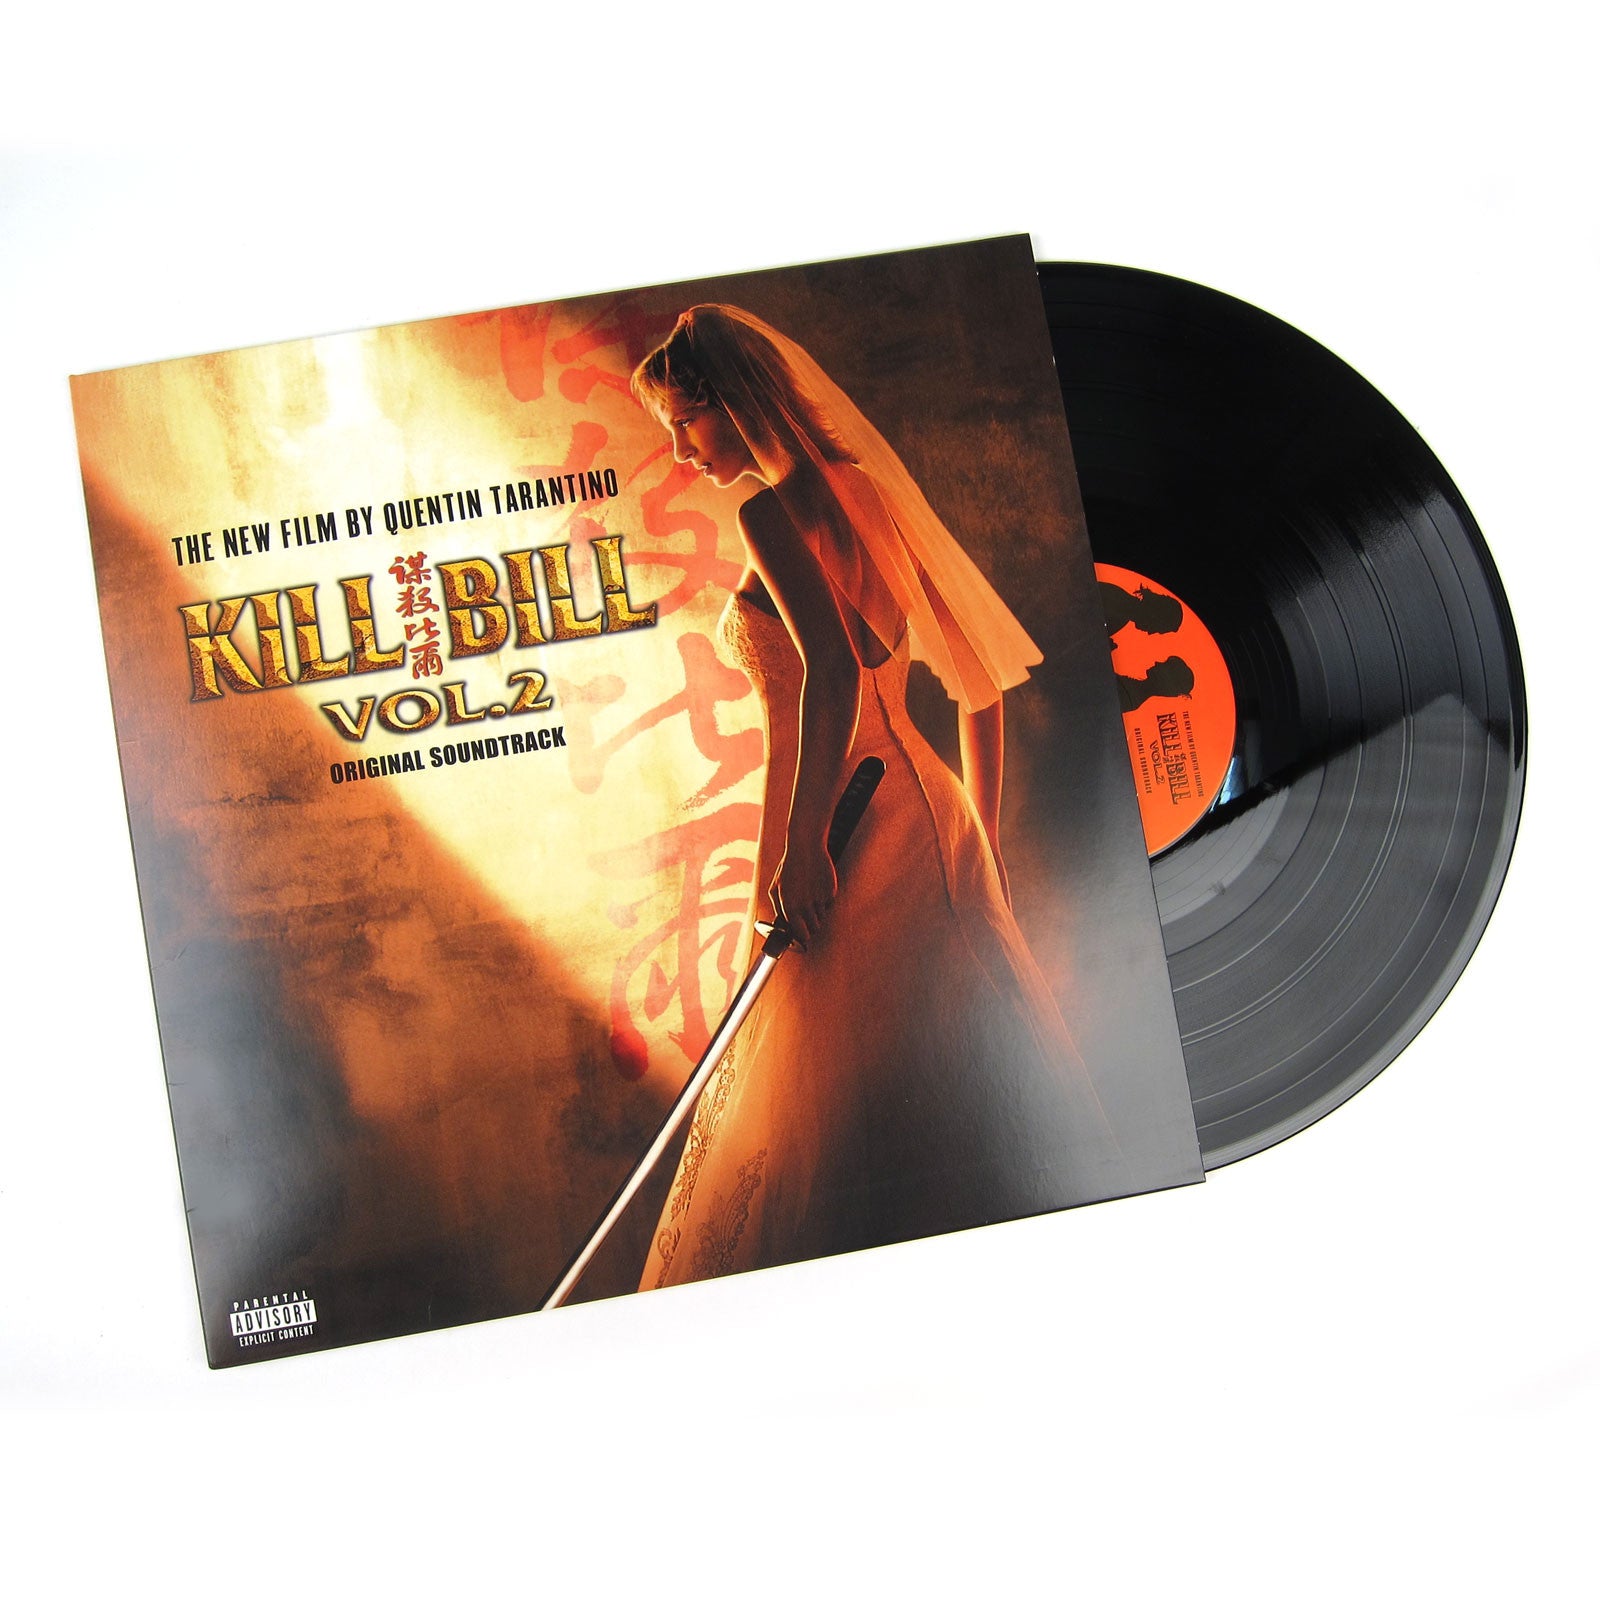 Саундтрек винил. Various – Kill Bill Vol. 2 (Original Soundtrack) Vinyl. Kill Bill 2 OST. Quentin Tarantino винил.